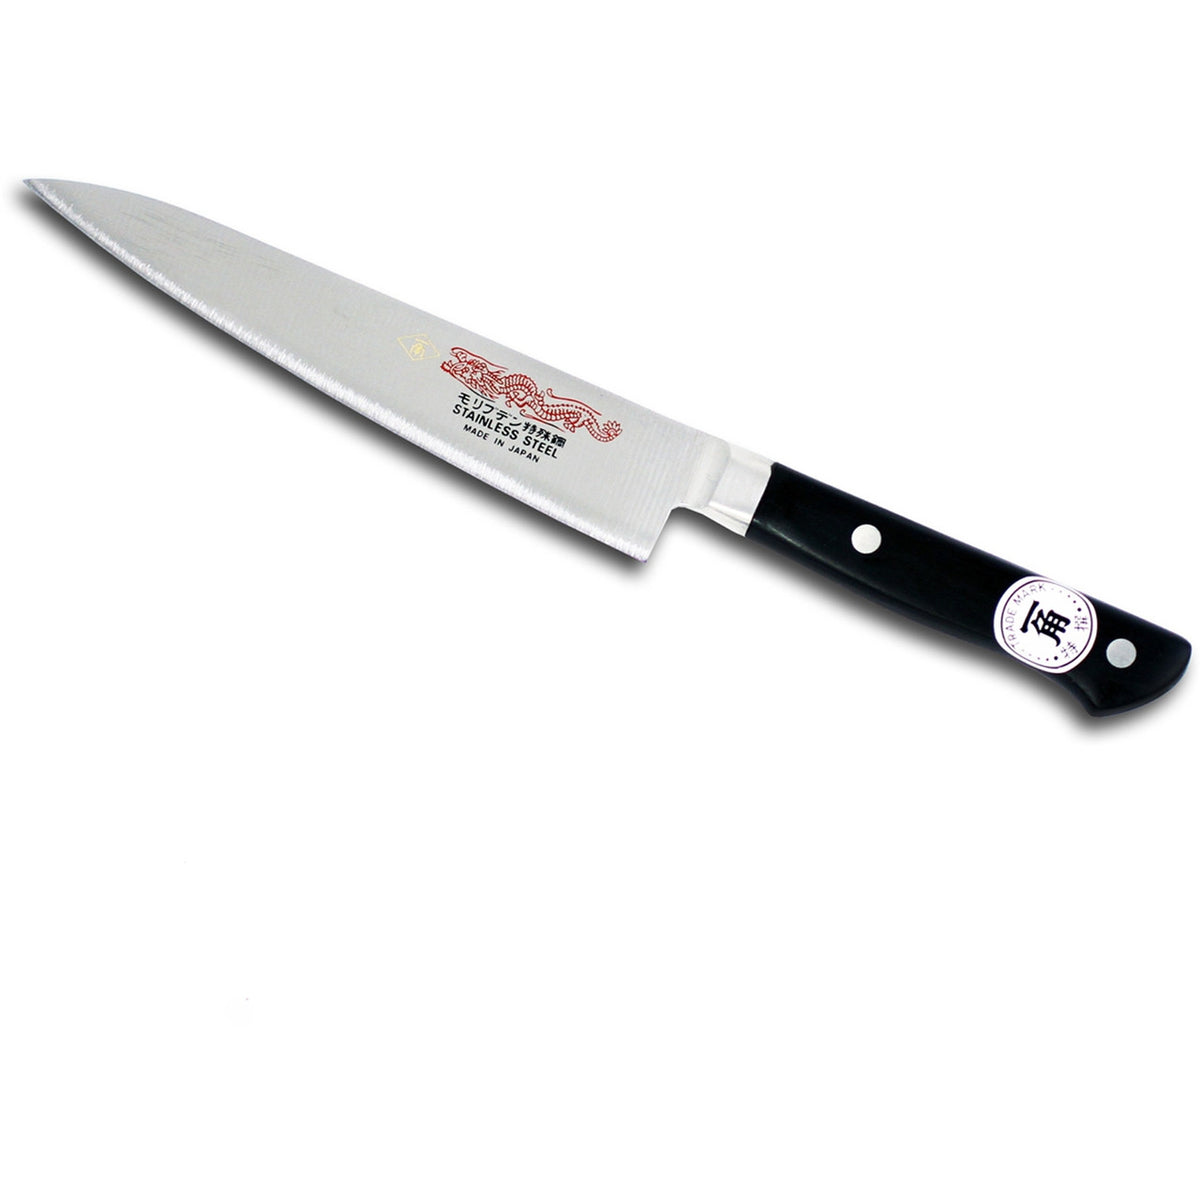 Enso HD Prep Knife - 5.5